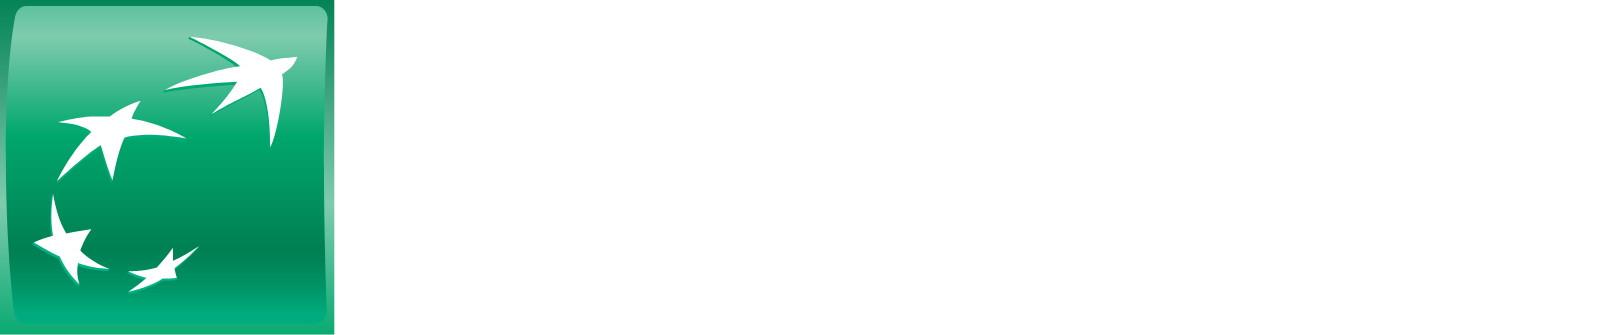 BNP Paribas logo large for dark backgrounds (transparent PNG)